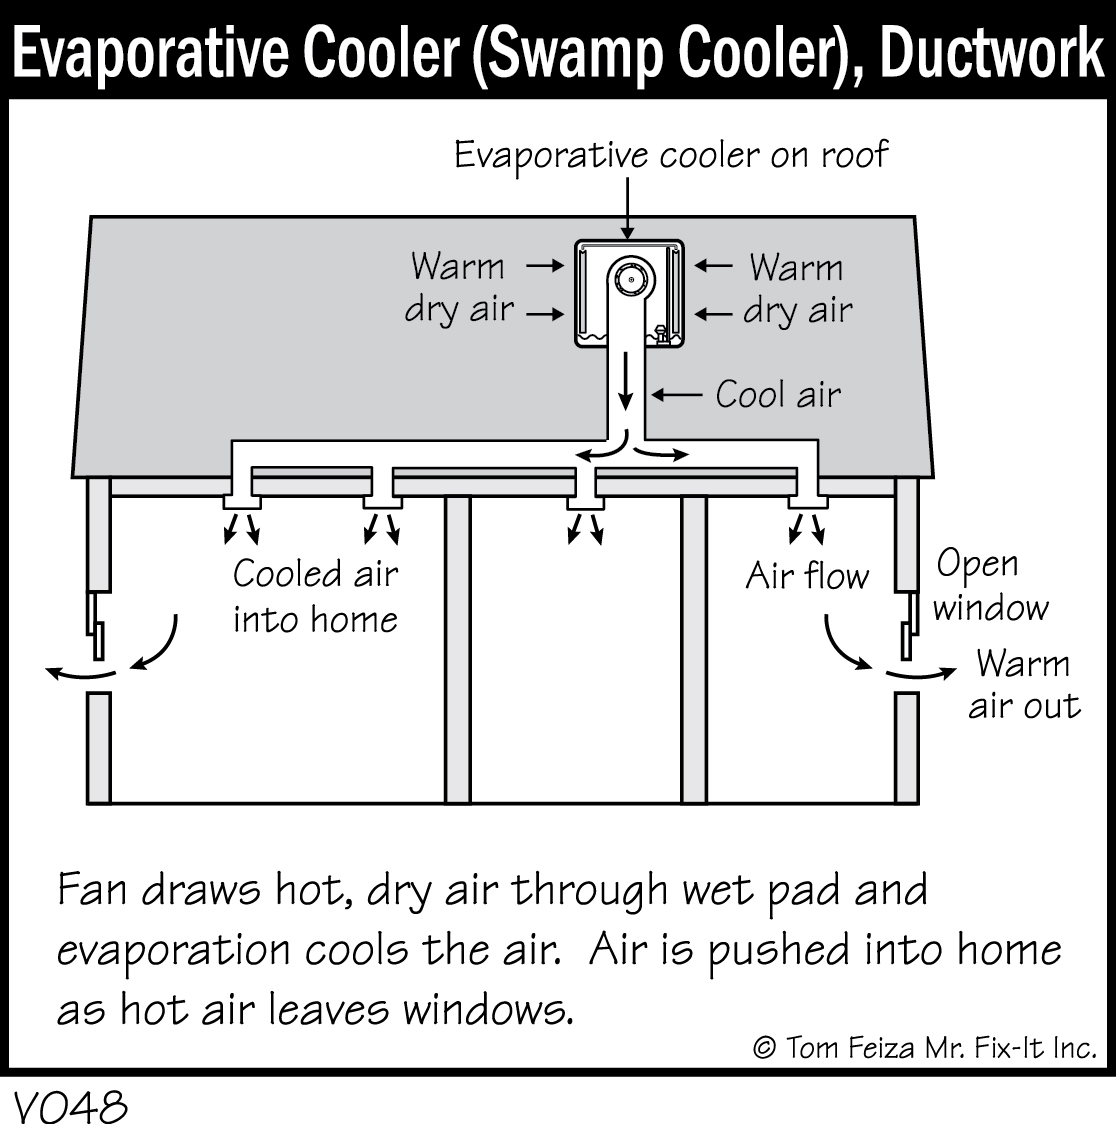 V048 - Evaporative Cooler (Swamp Cooler), Ductwork